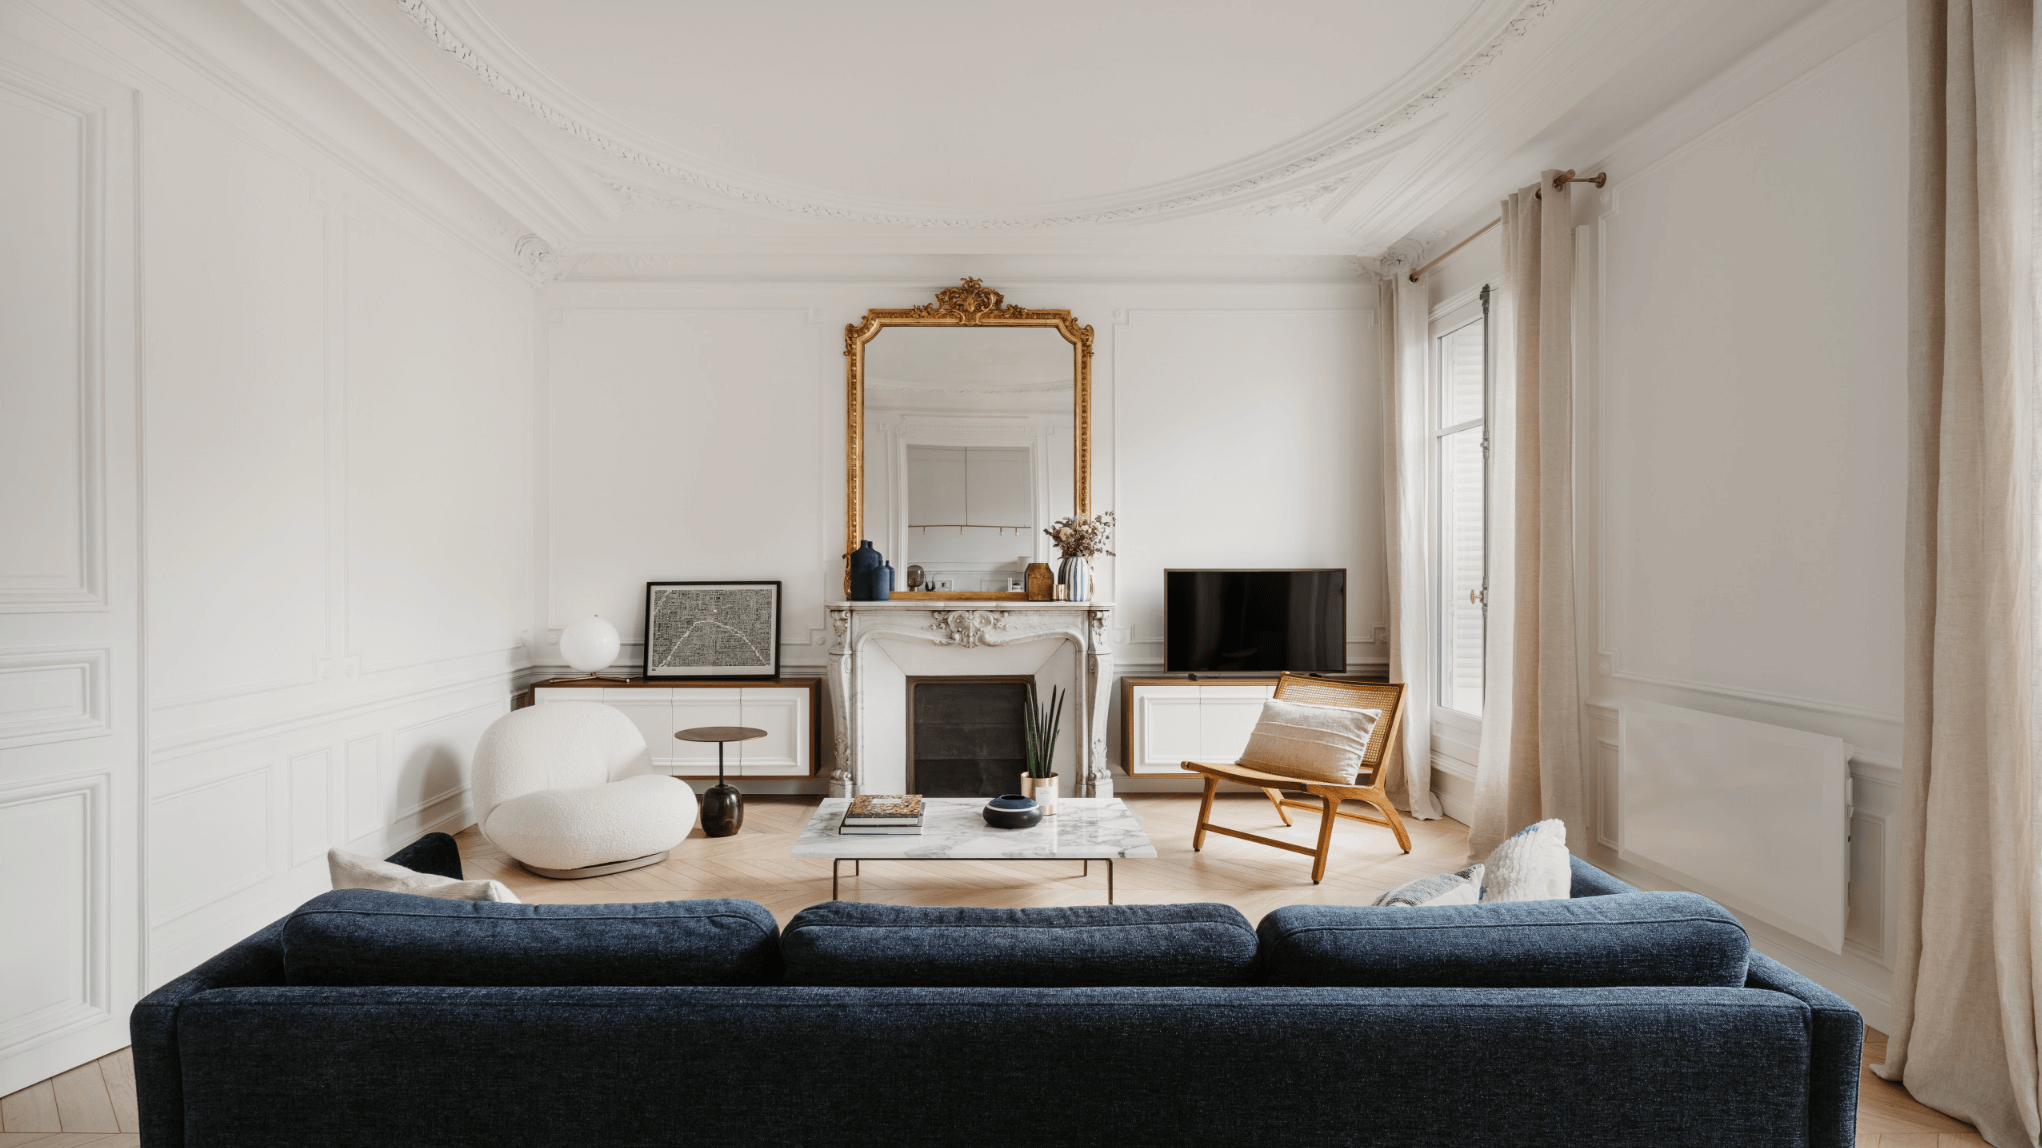 Paris Apartment Interior Design - Living Room